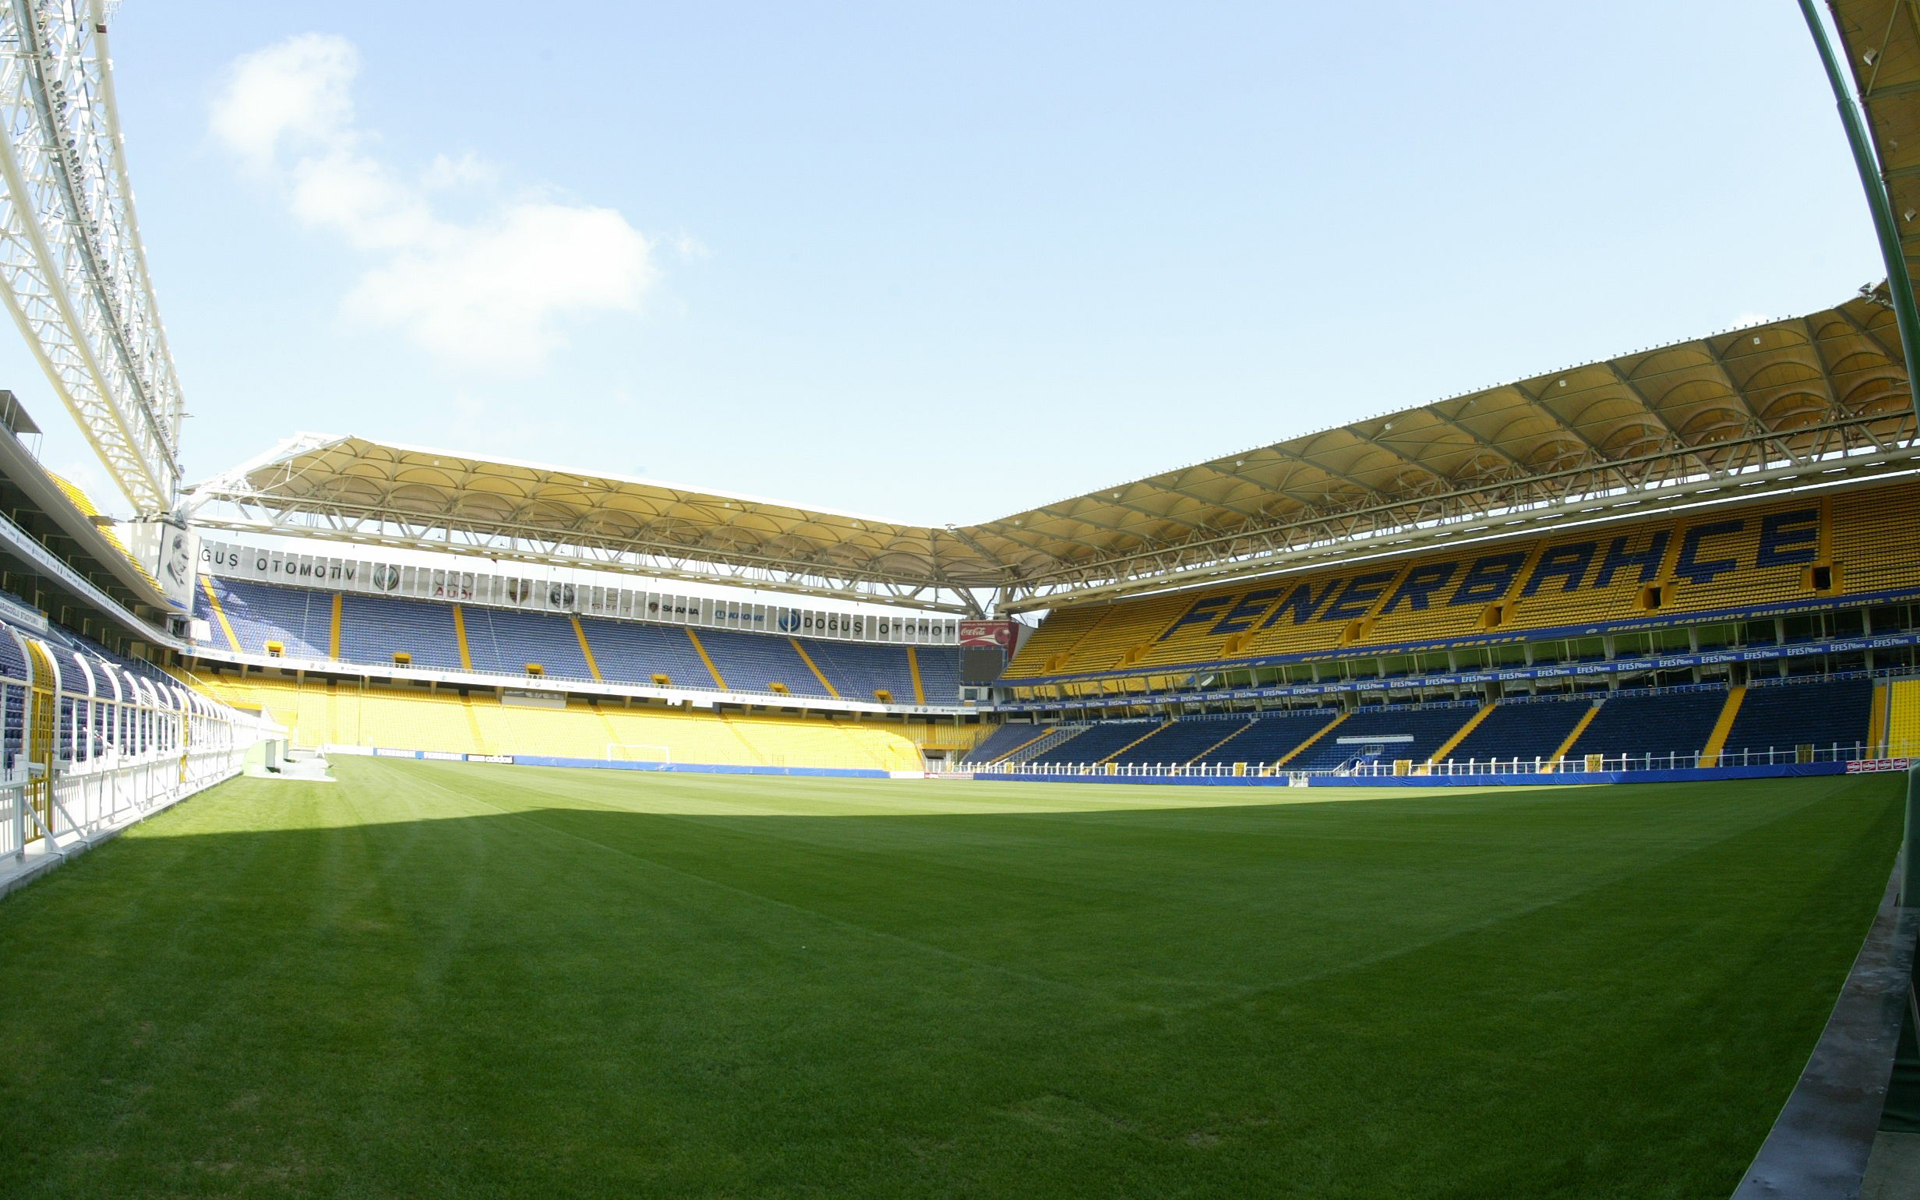 Fenerbahçe Stadium with GreenFields turf